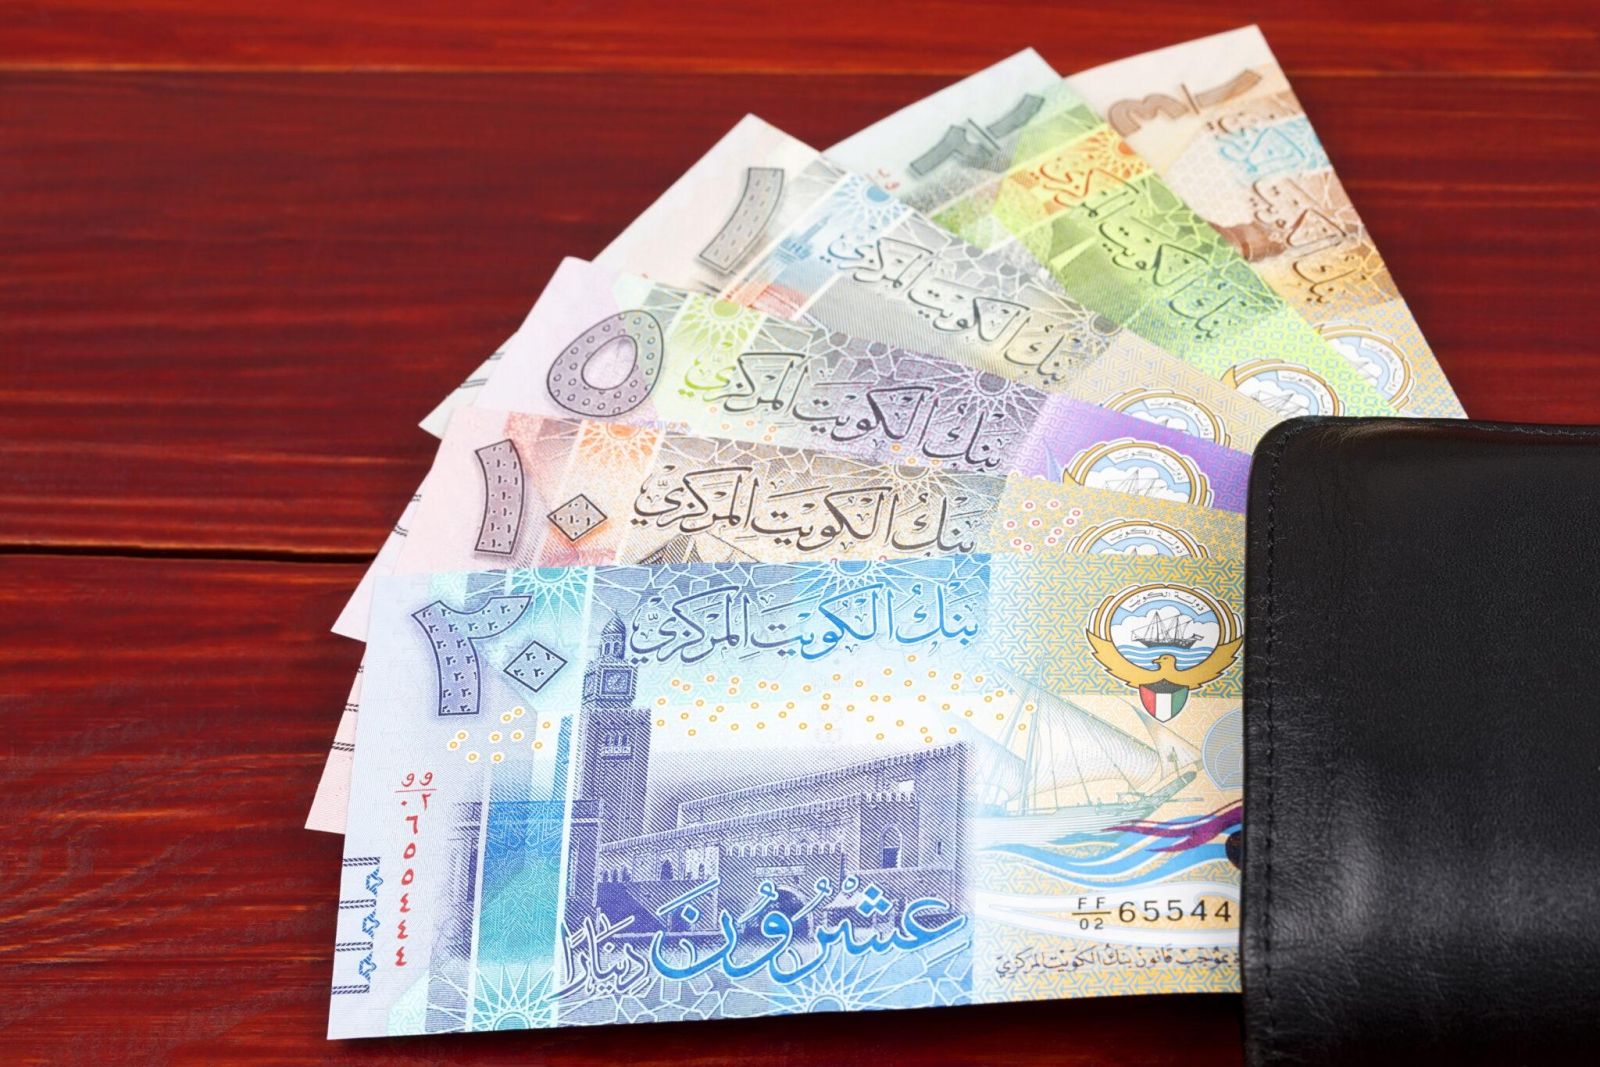 السعر الحالي للدينار الكويتي في السوق المصري